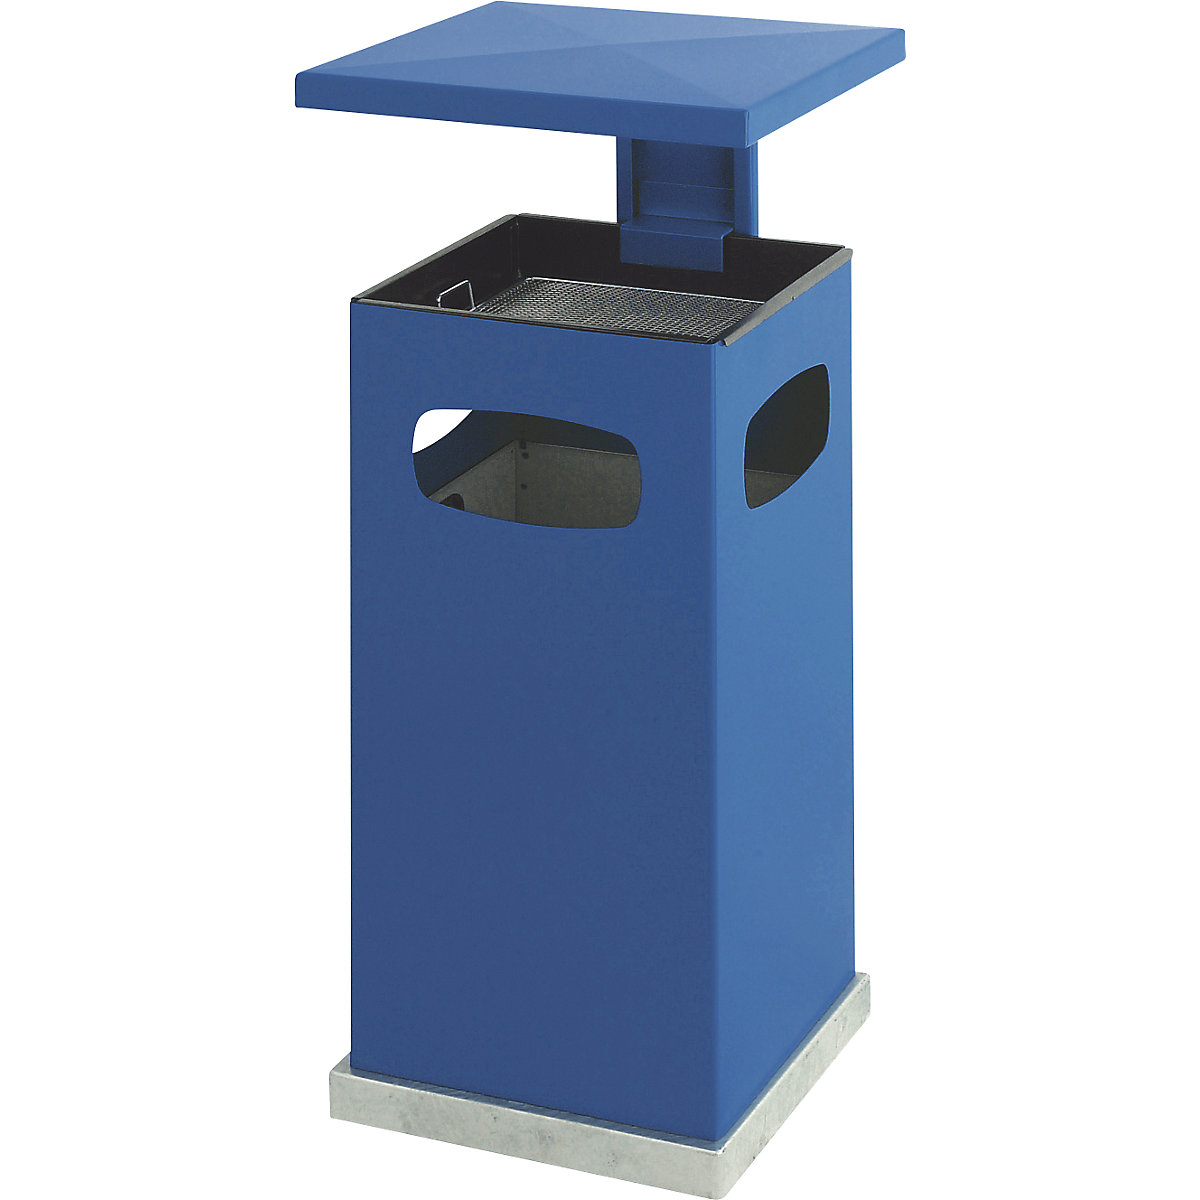 Colector de residuos con cenicero interior y tejadillo, capacidad 38 l, A x H x P 395 x 910 x 395 mm, azul genciana-5